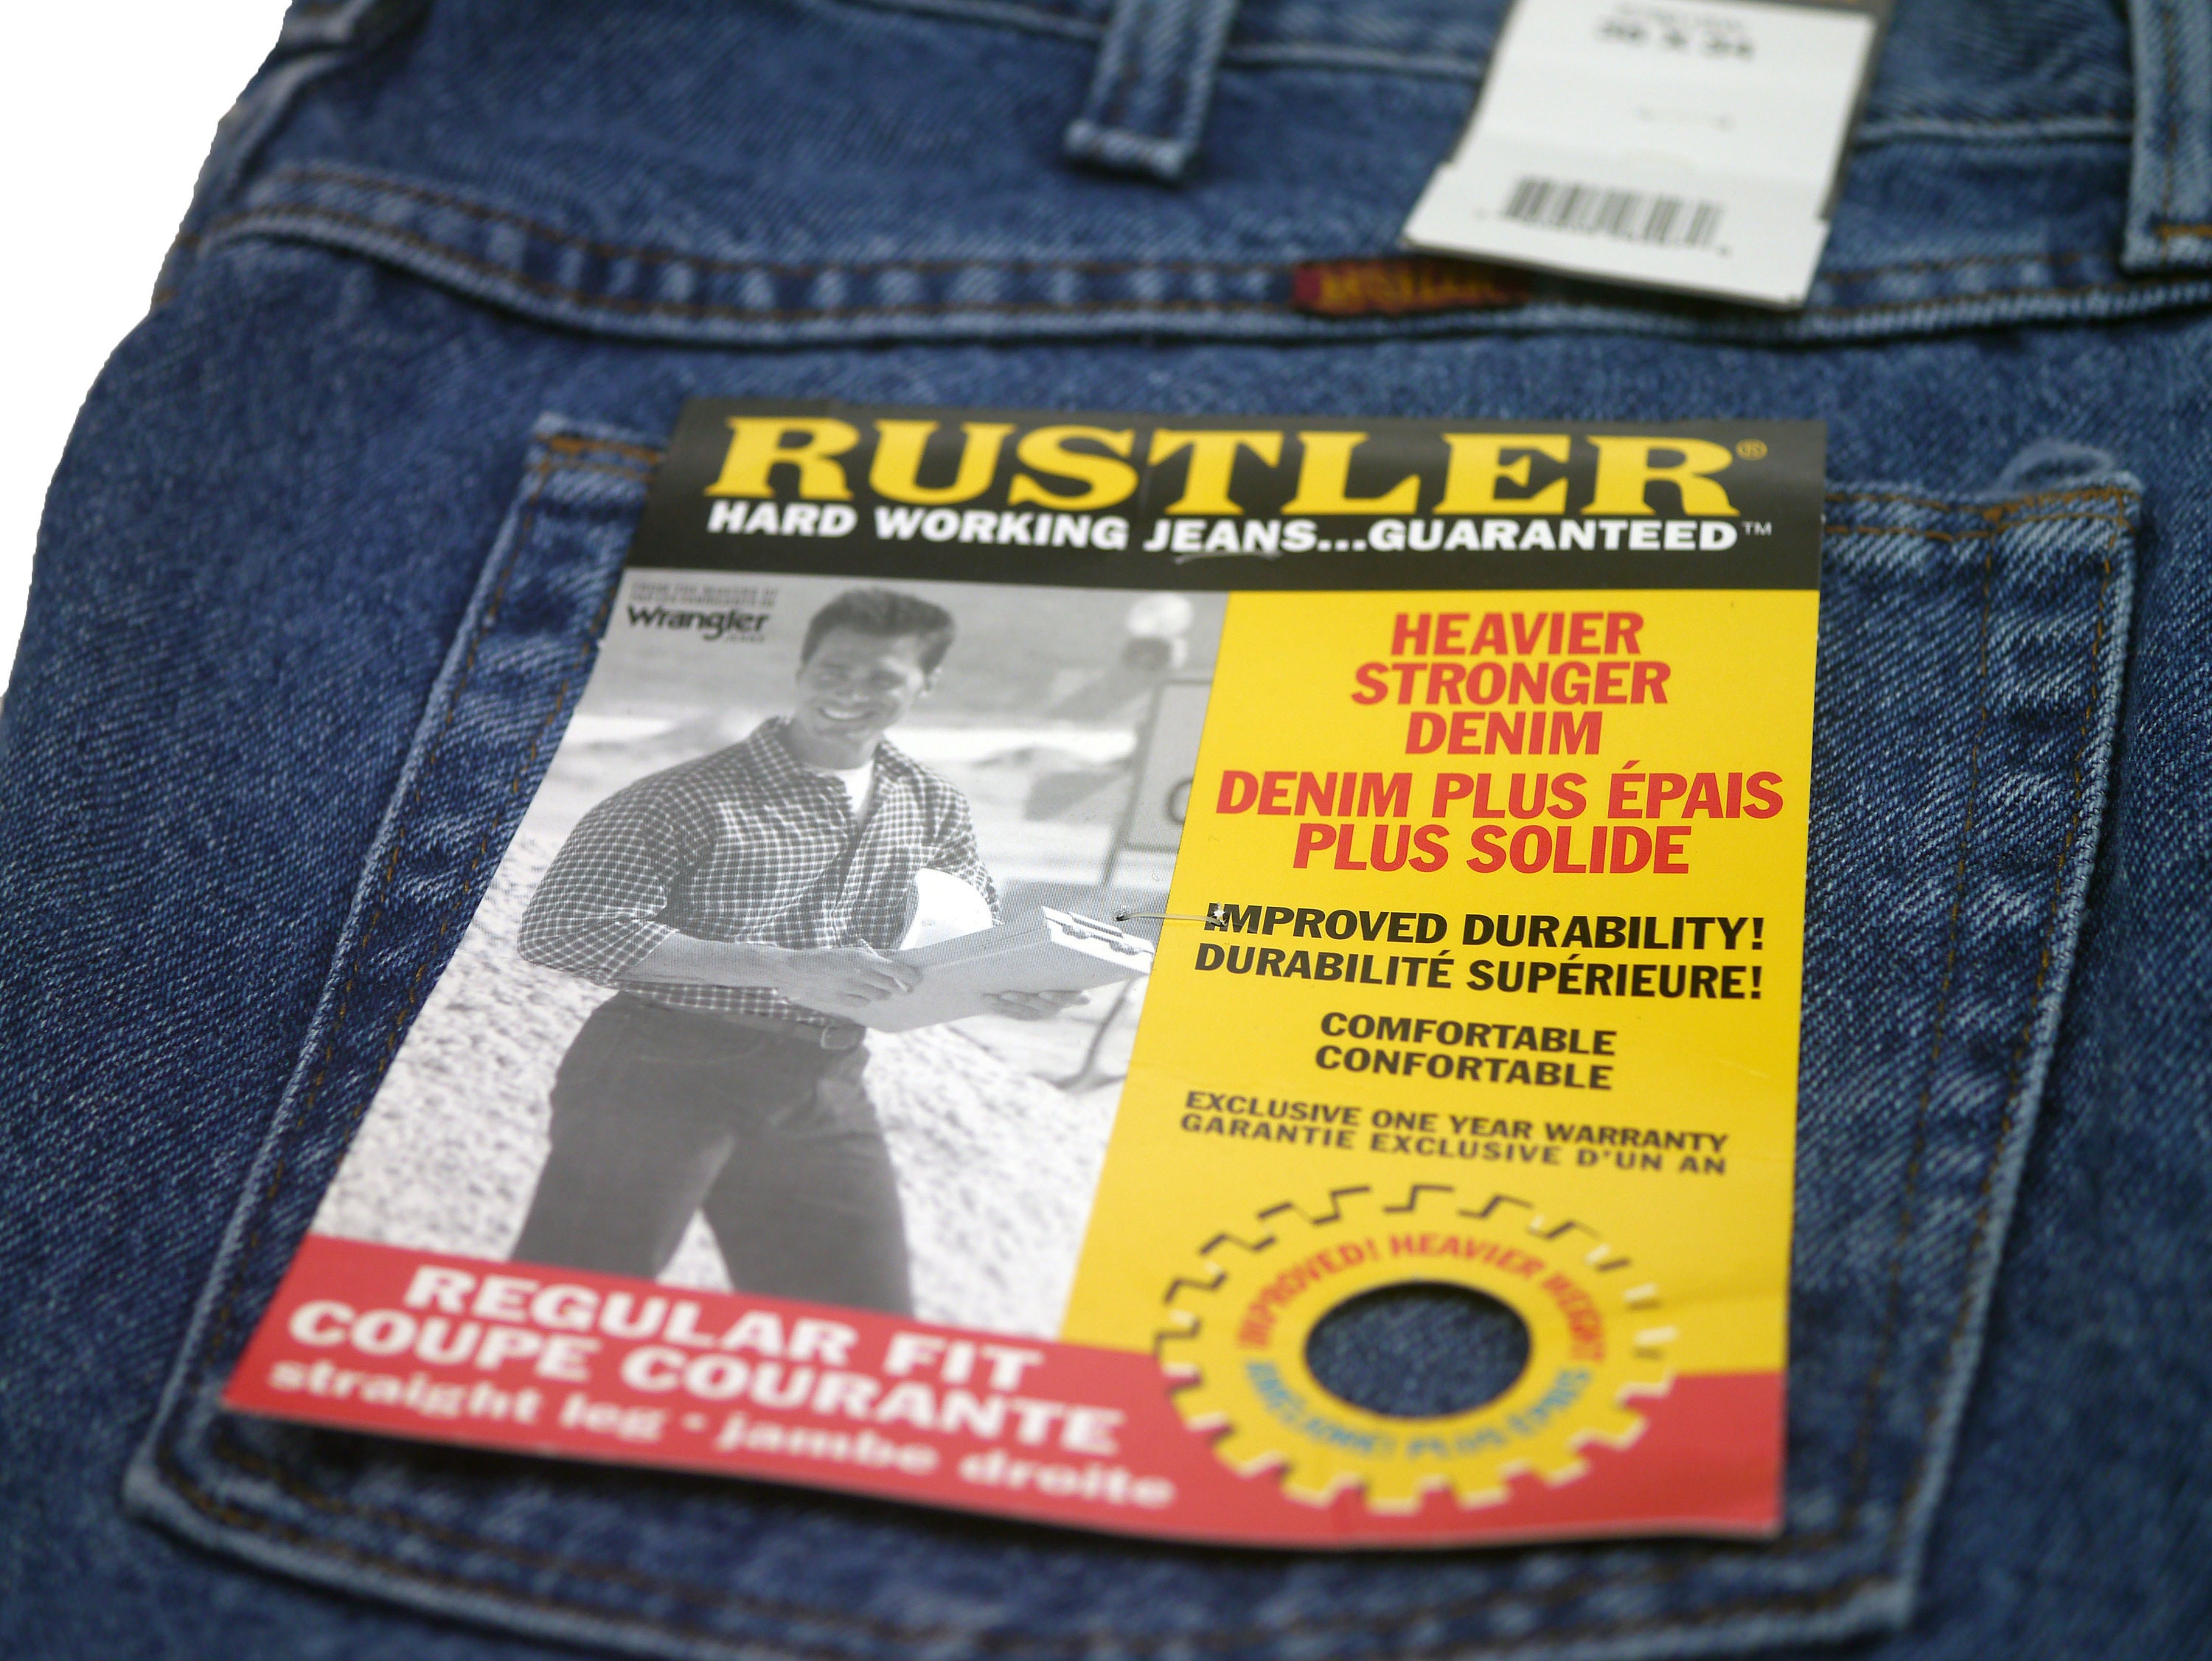 Total 65+ imagen are rustler jeans made by wrangler - Thptnganamst.edu.vn